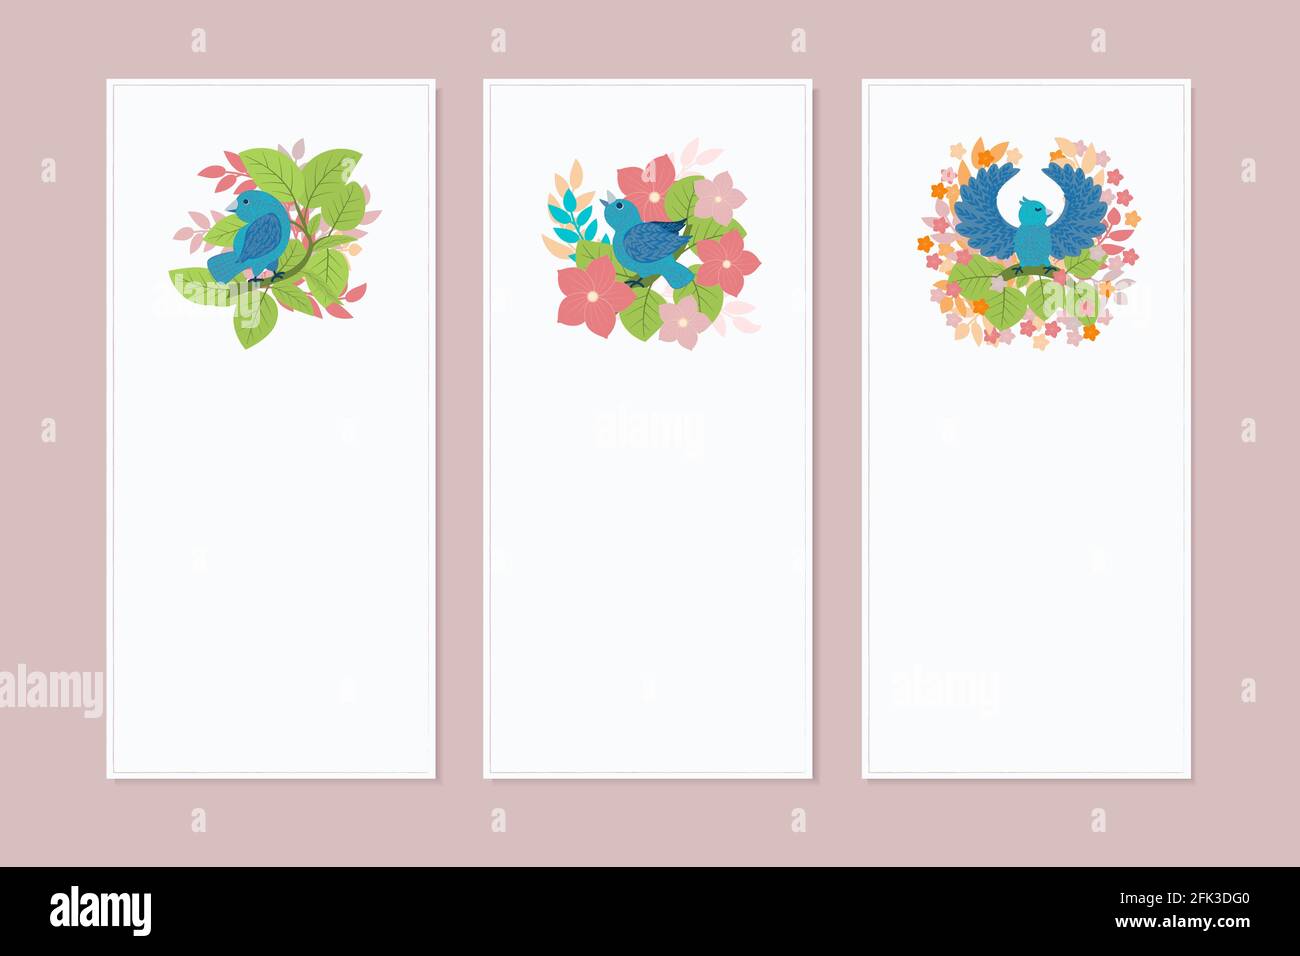 Eine Reihe von Spruchbändern, Postern, Einladungen oder Flyern mit einem Muster im Frühjahr/Sommer. Designelemente mit Vögeln, Blumen und Blättern im flachen Stil. Vect Stock Vektor